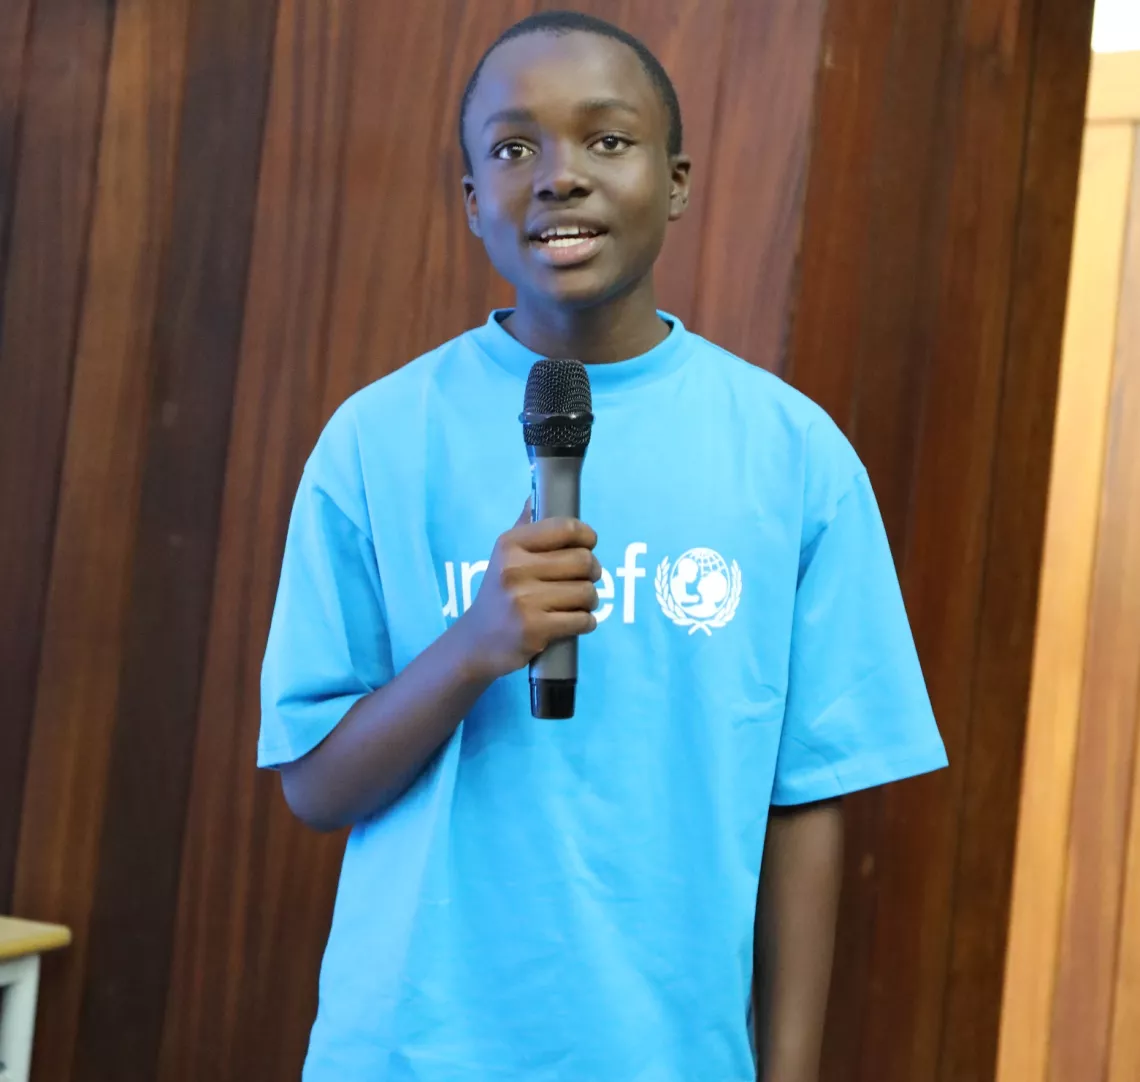 Weiss Pambe, tem 14 anos de idade, é da cidade de Maputo, é apresentador e repórter do programa infanto-juvenil Roda Viva na Televisão de Moçambique (TVM) e deputado do Parlamento Infantil à nível da Cidade de Maputo. Weiss quer ajudar a reduzir o casamento prematuro.